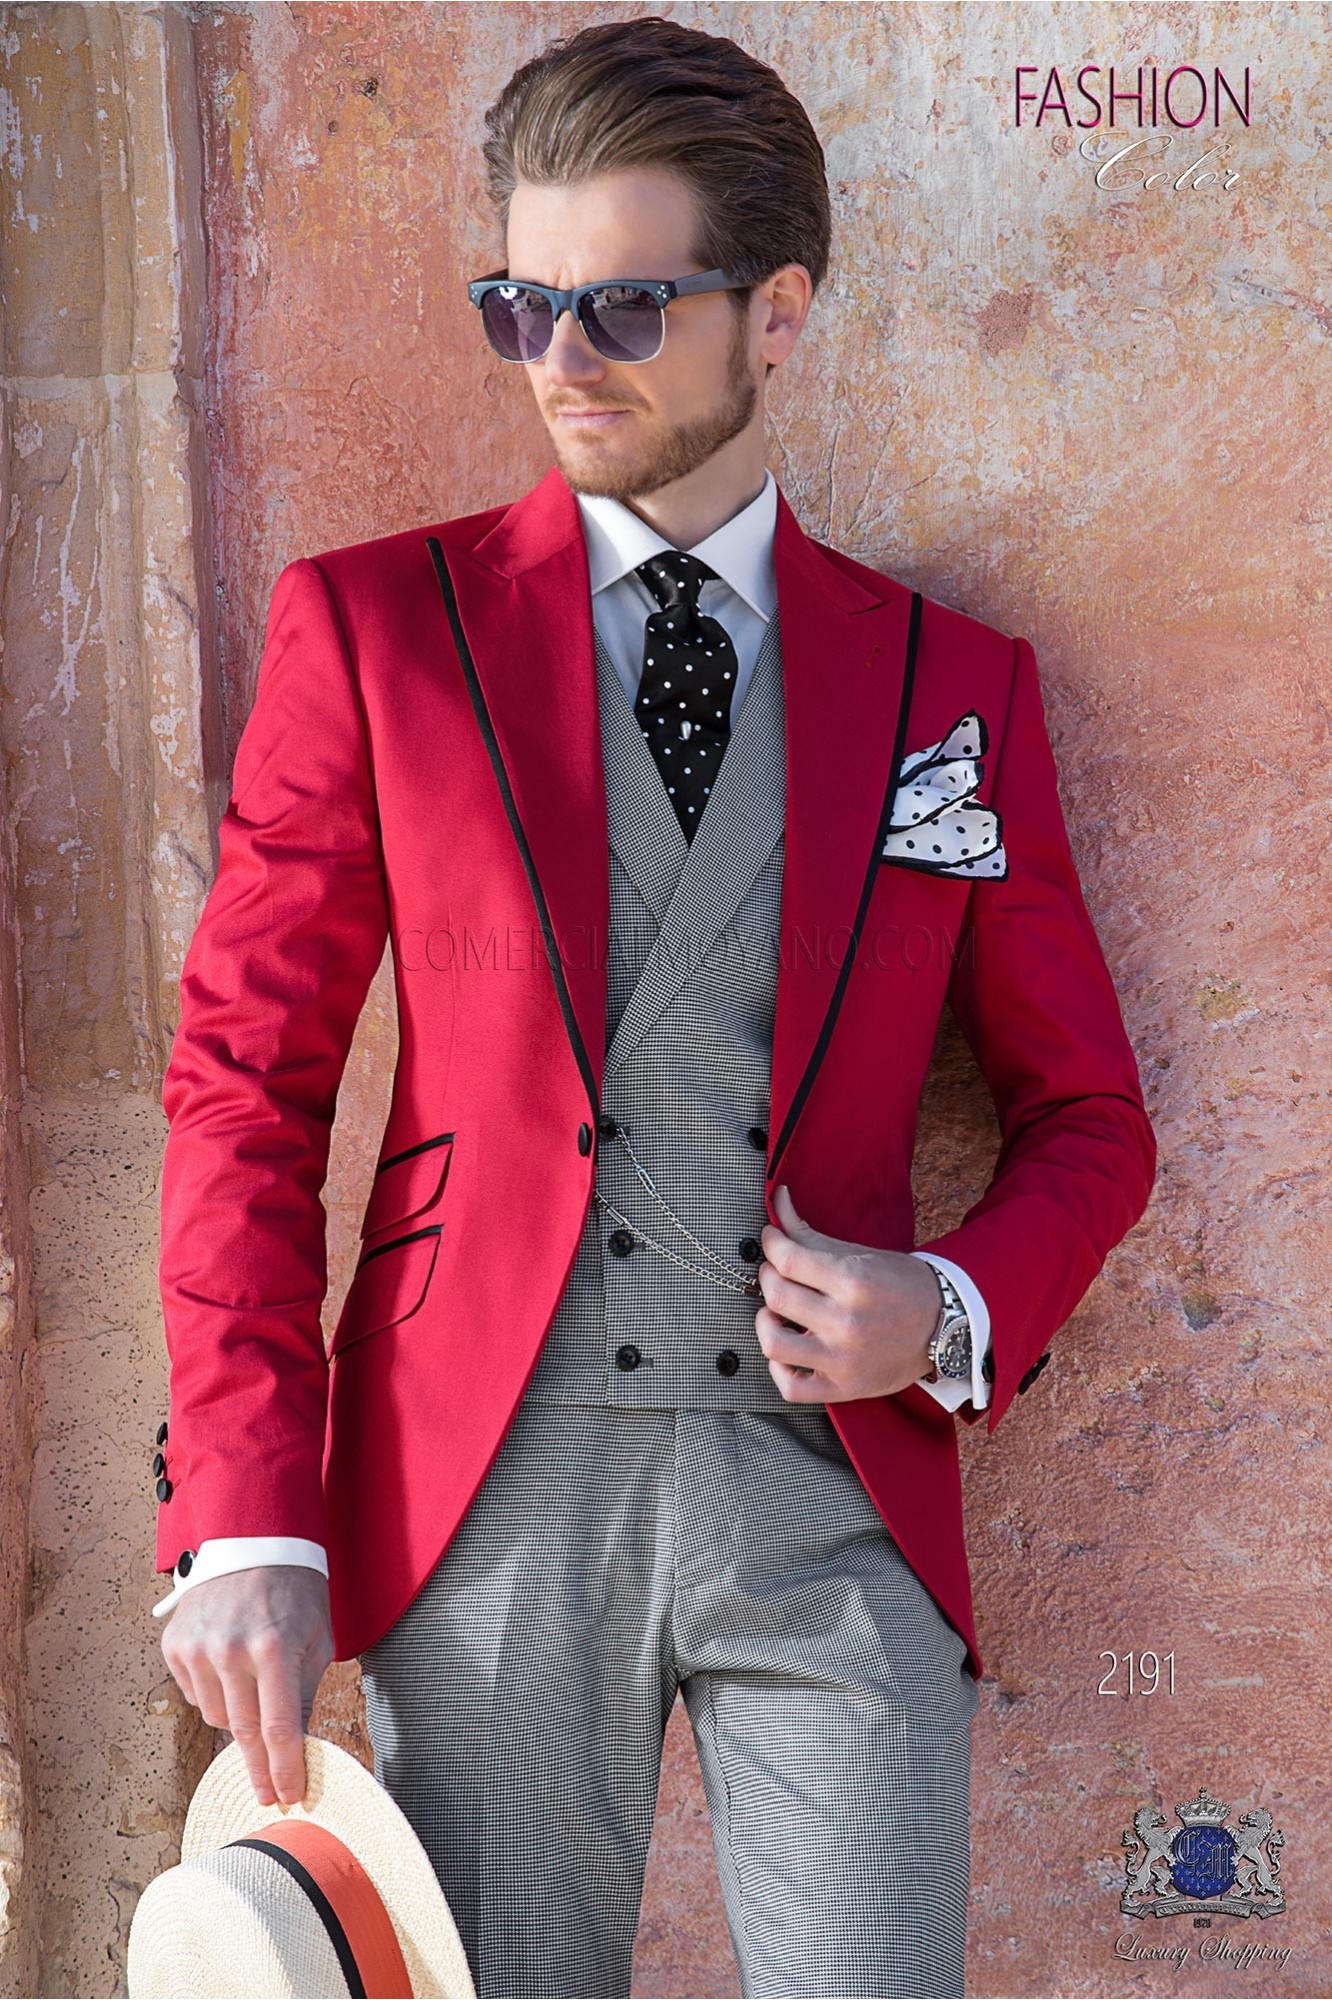 Traje rojo algodón con perfil en contraste negro modelo: 2191 Mario Moyano colección Hipster